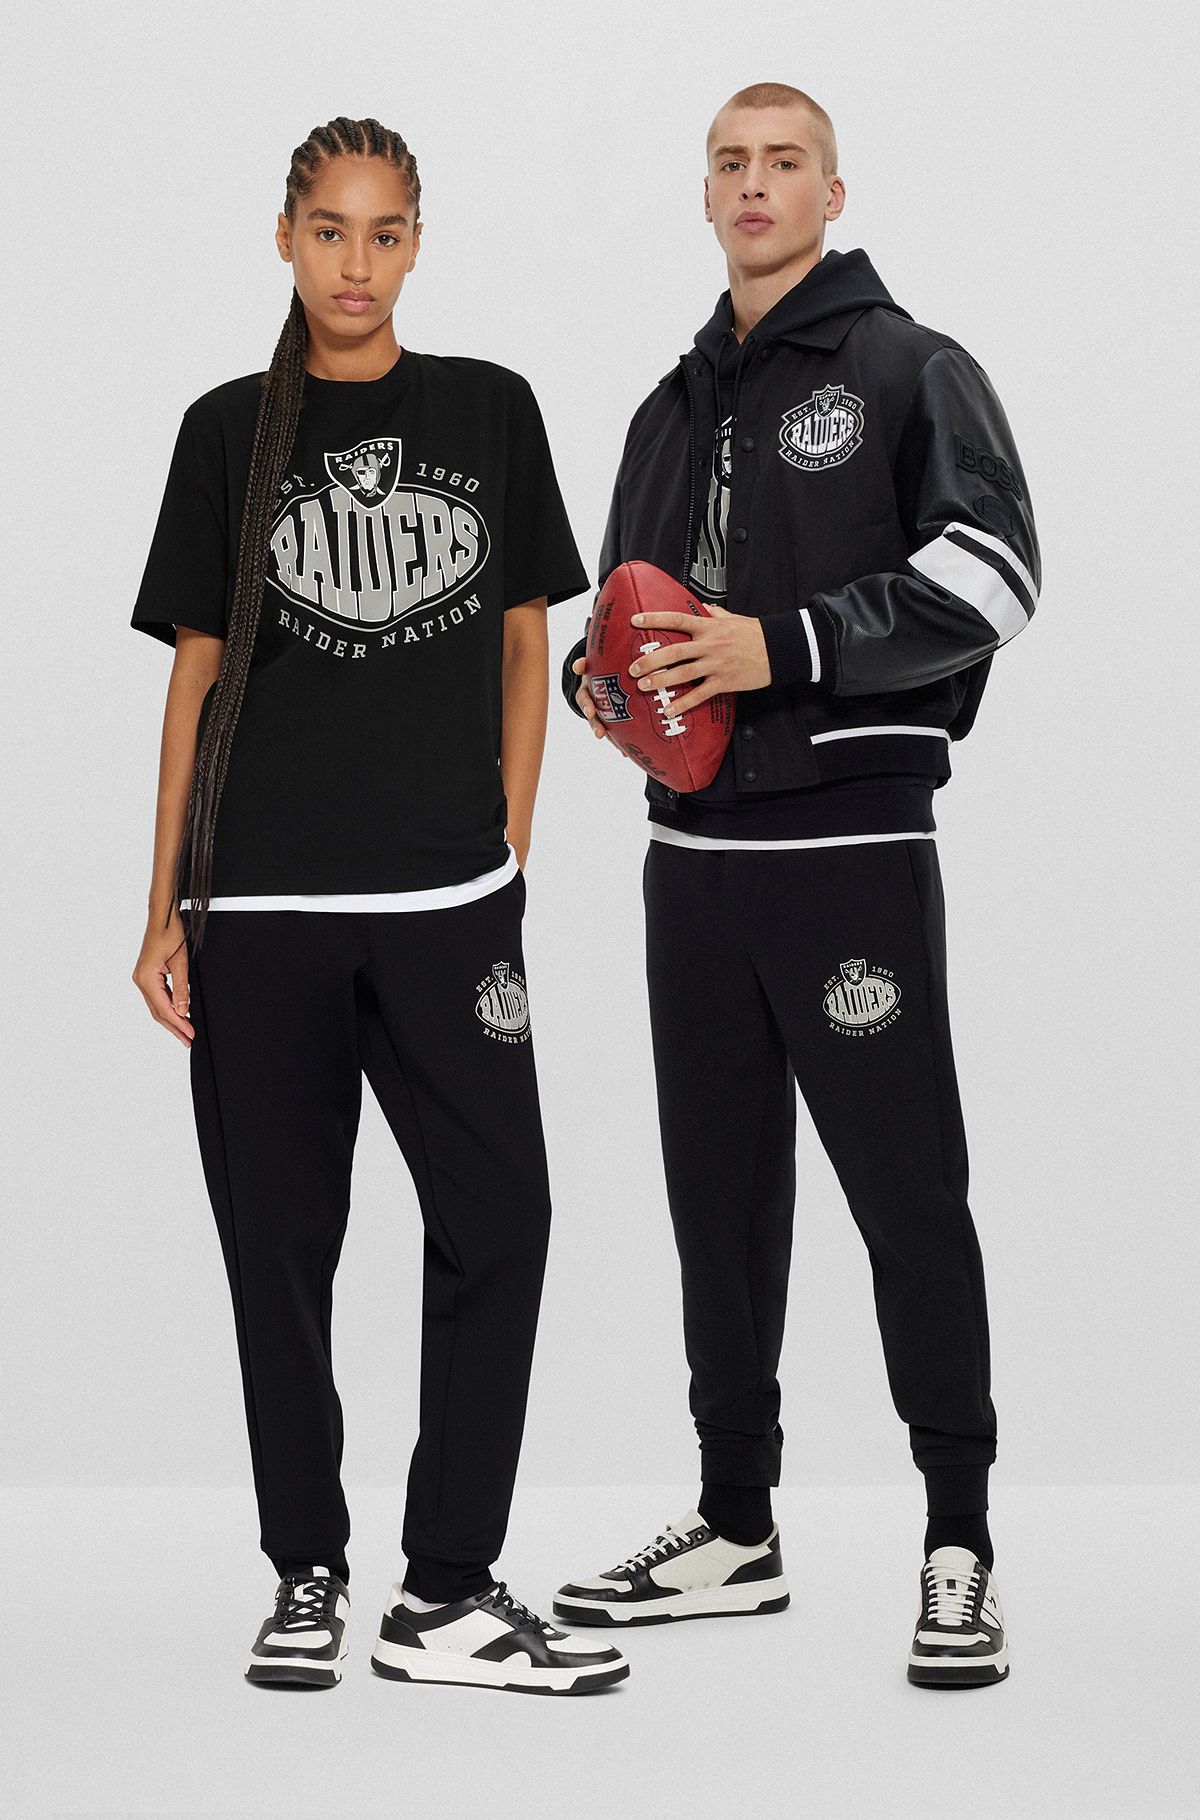 Pantalones de chándal BOSS x NFL de mezcla de algodón con detalle de la colaboración, Raiders